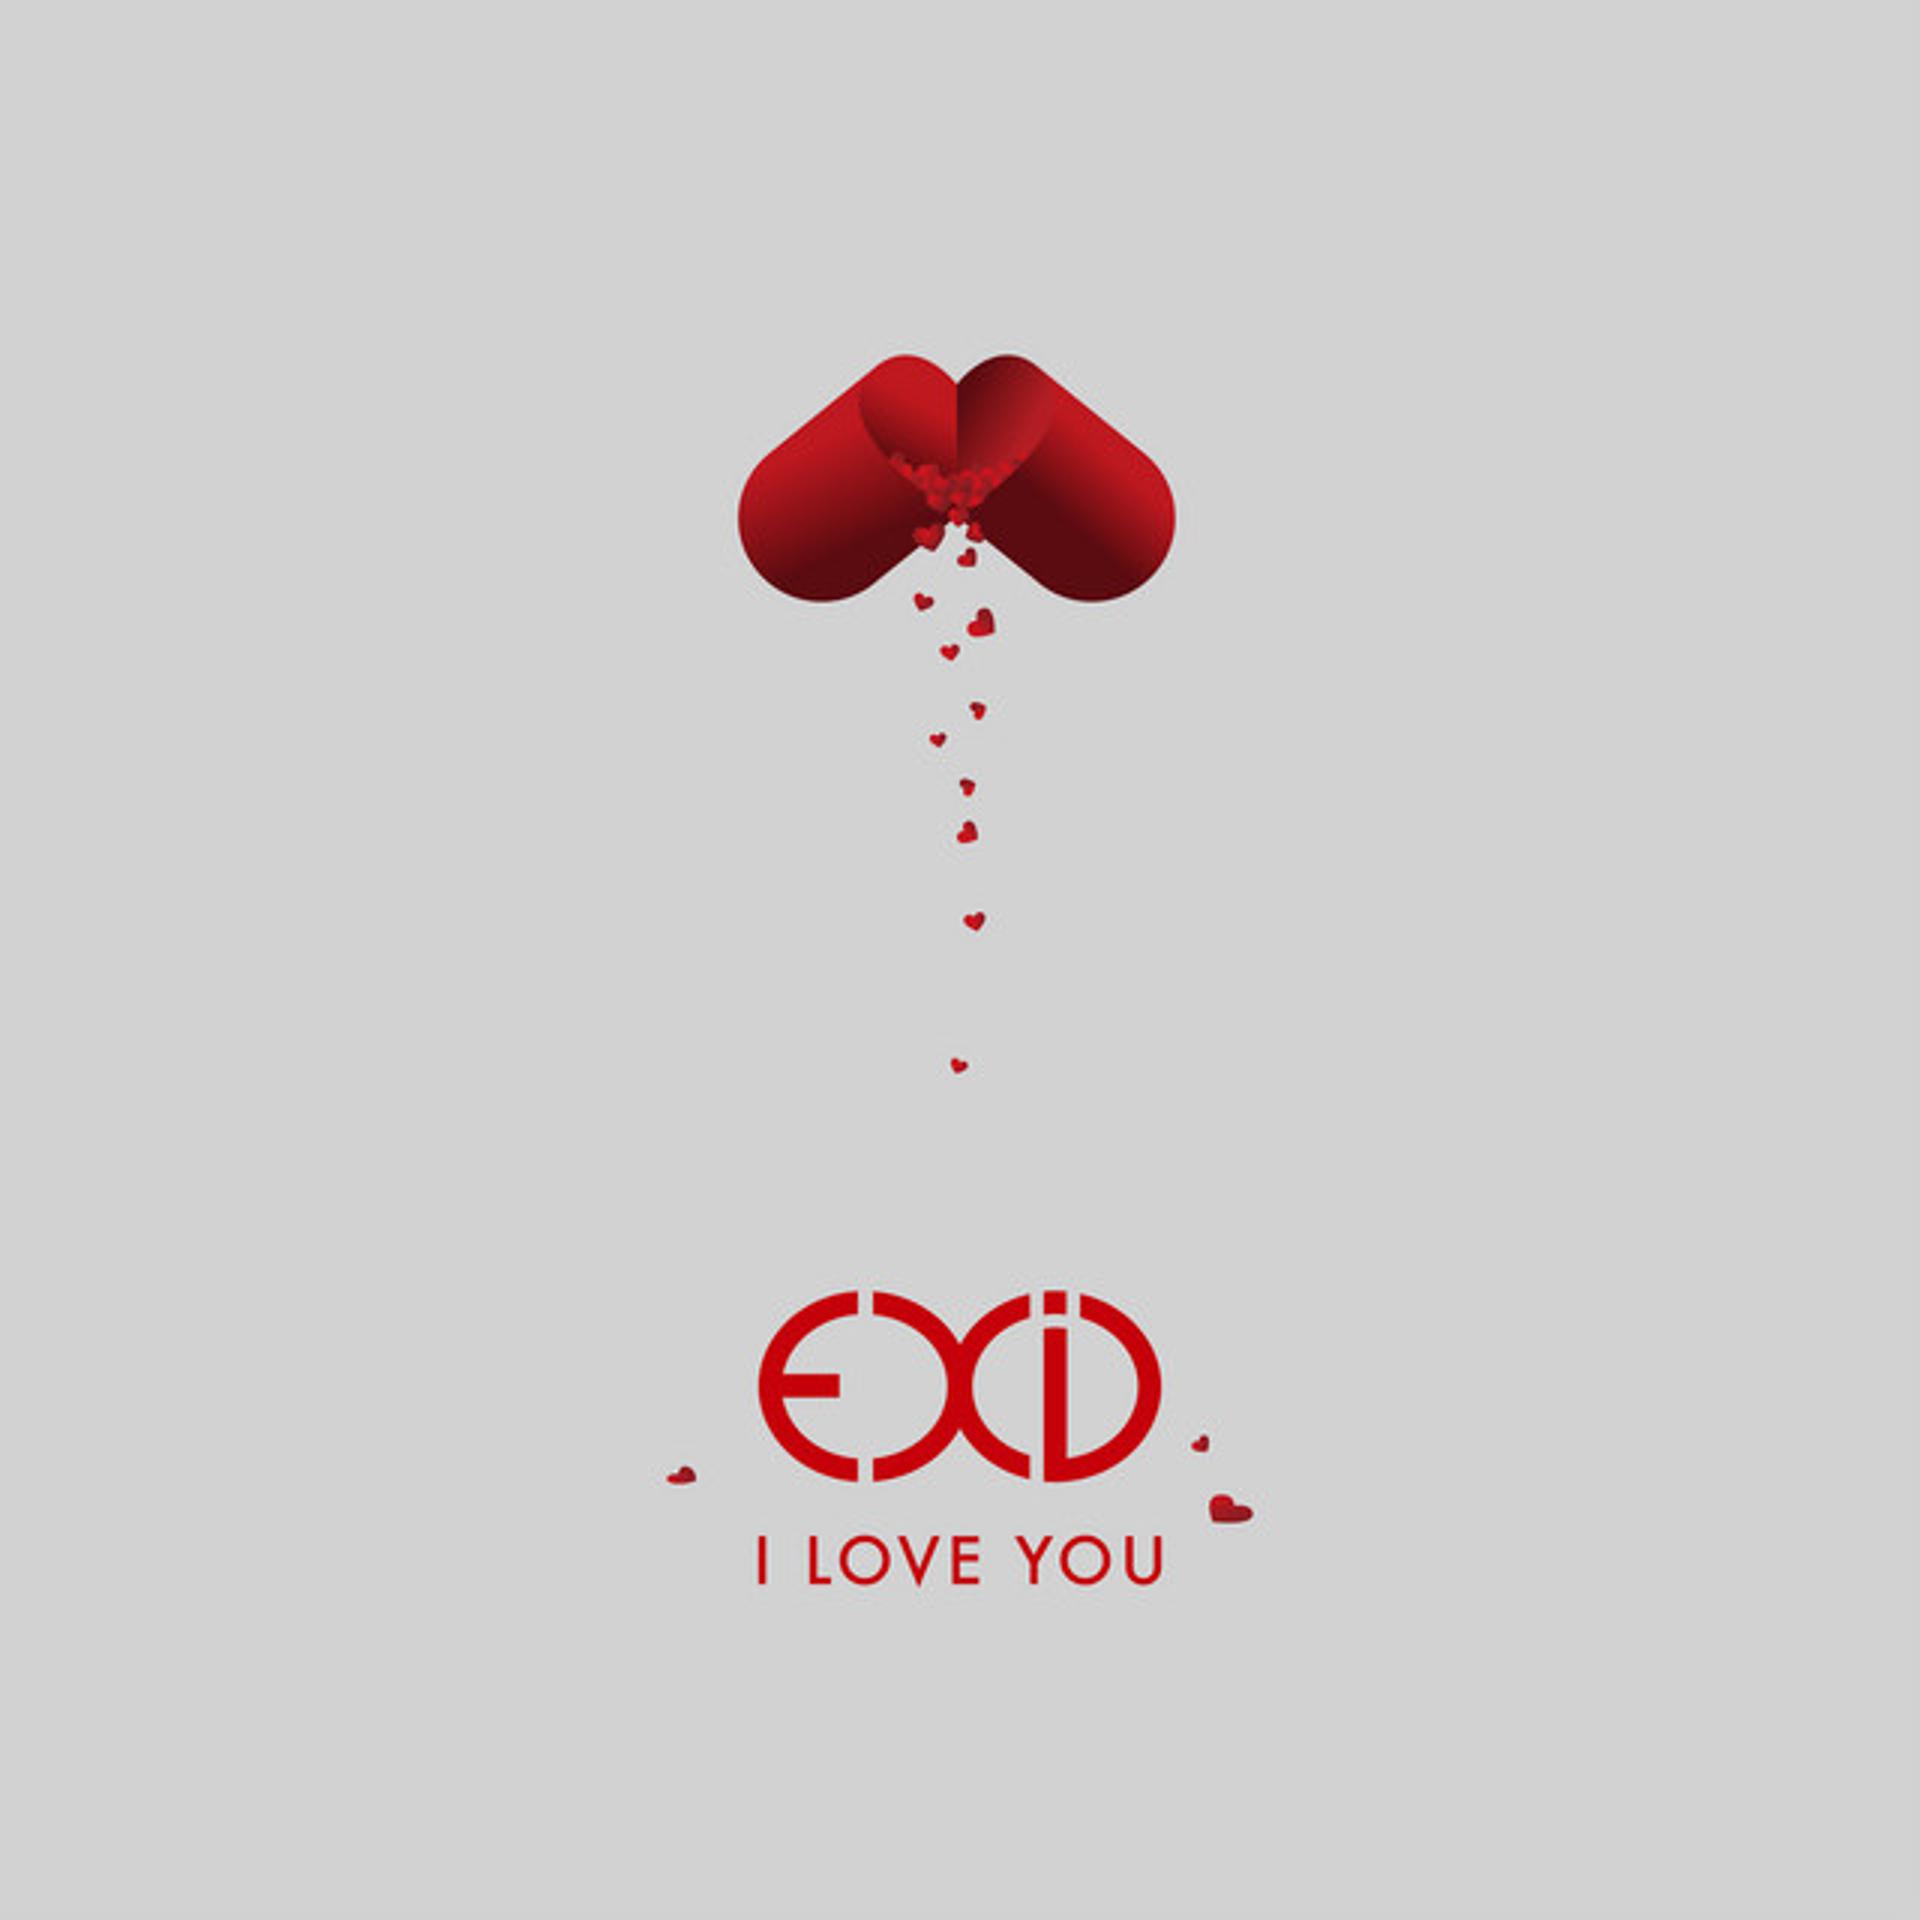 I Love you. EXID I Love you. EXID iloveyou. I Love обложка. Лов со ю